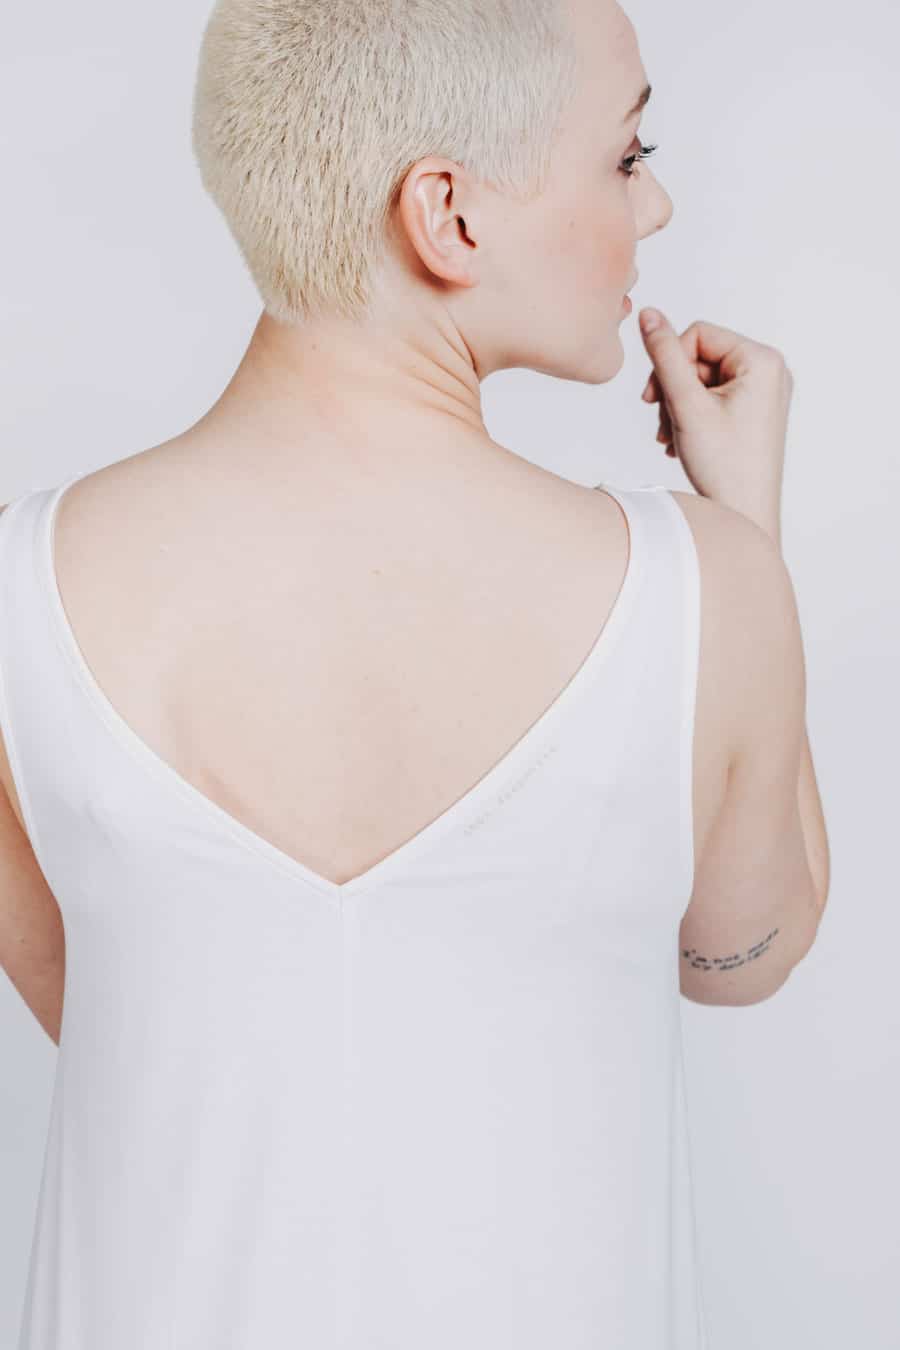 Deep White Black Modell SASHA langes Kleid weiß, ärmelloses Sommerkleid mit V-Ausschnitt, Schriftzug 1001 Deep White, Ansicht Detail Ausschnitt von hinten